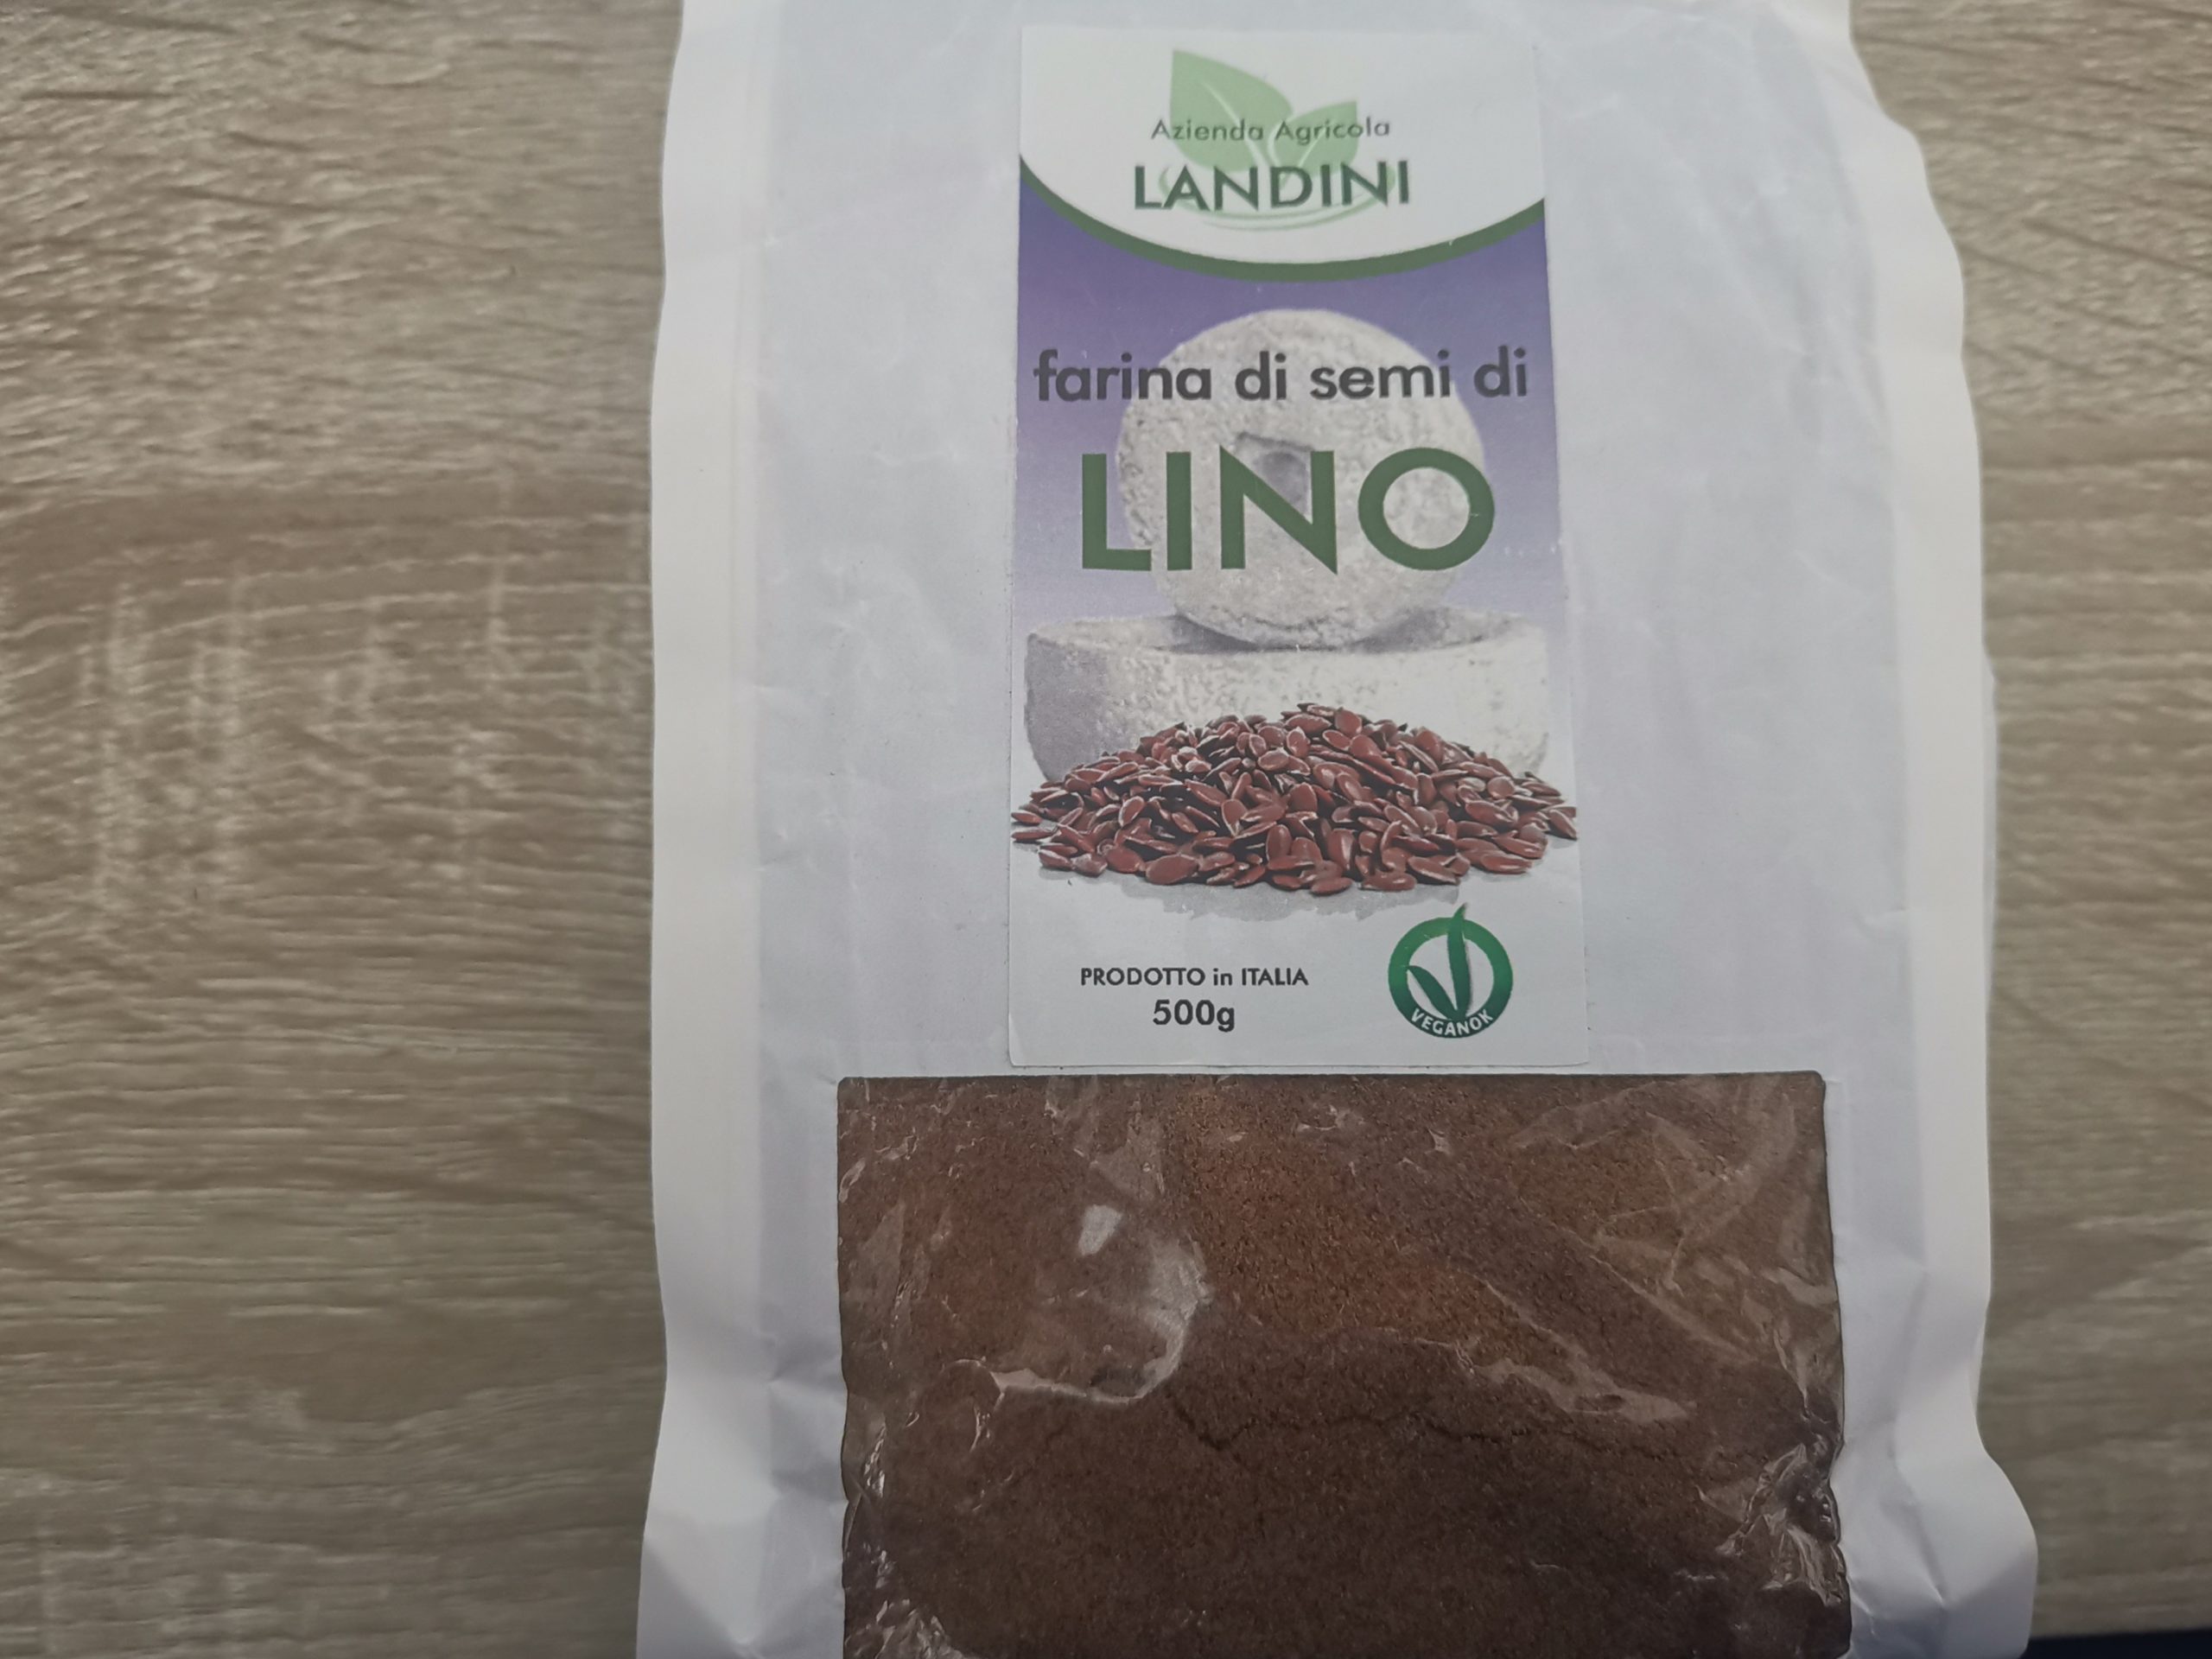 Farina di semi di lino Azienda Agricola Landini - Veganblog